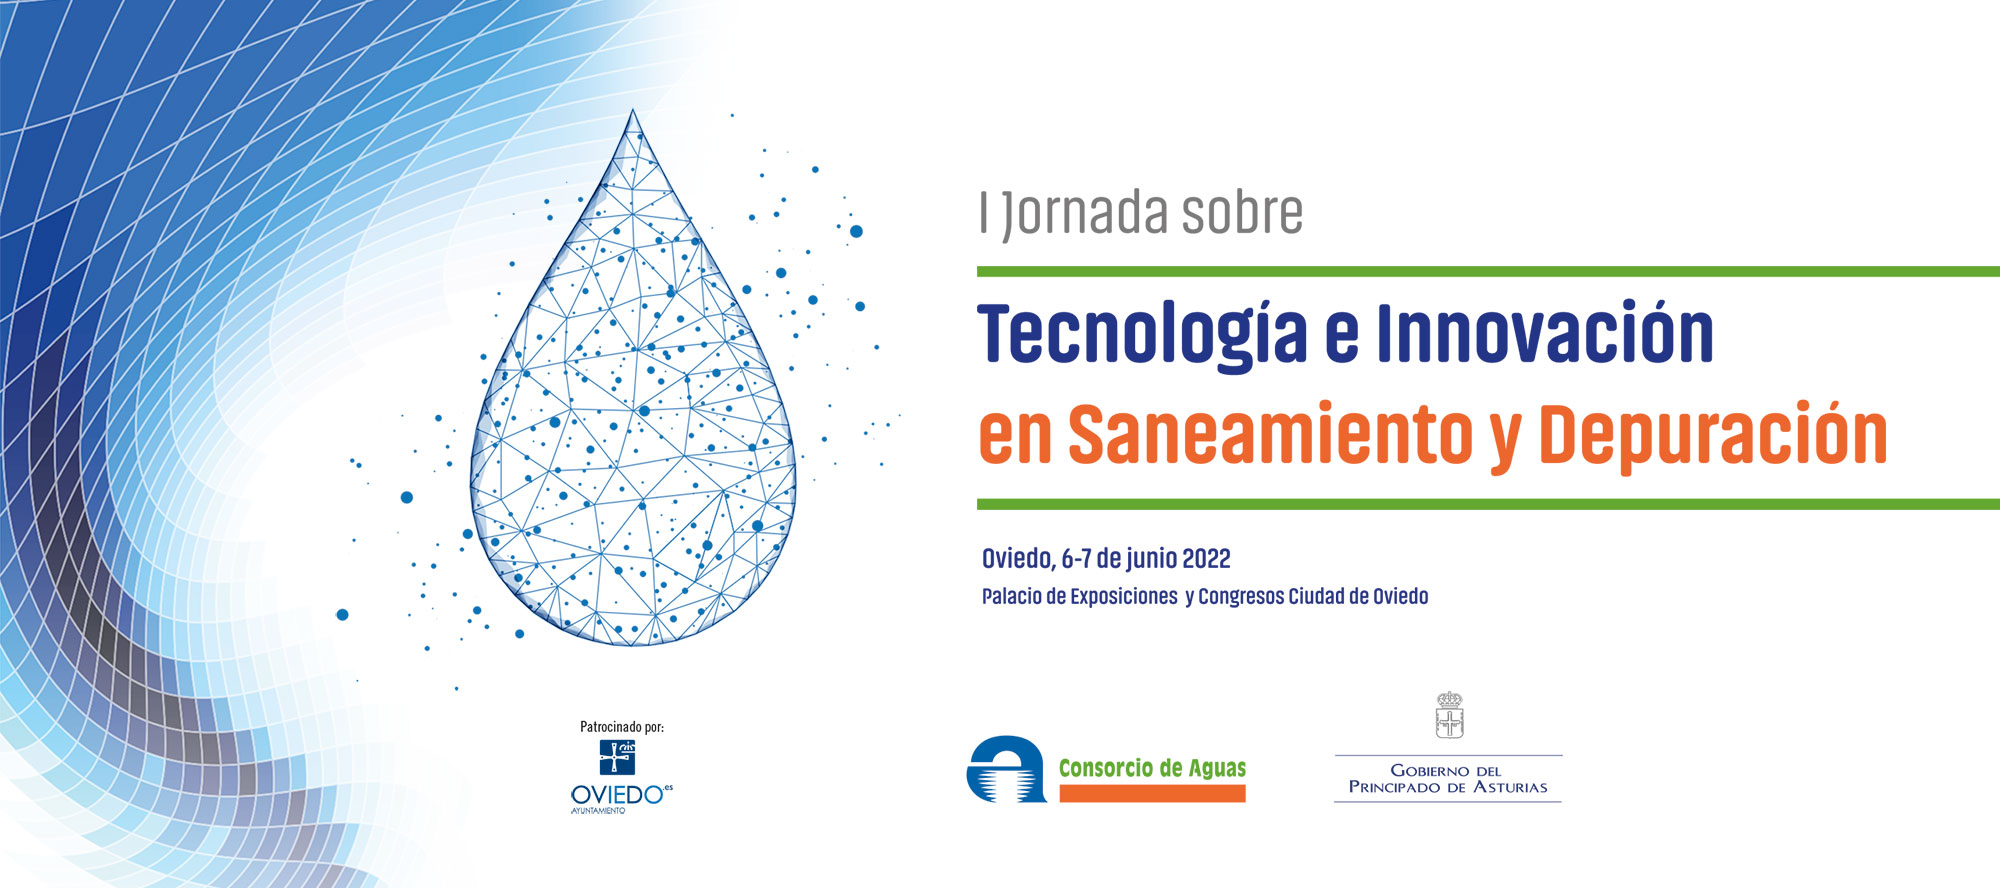 11jornada sobre tecnologia e innovacion en saneamiento y depuracion